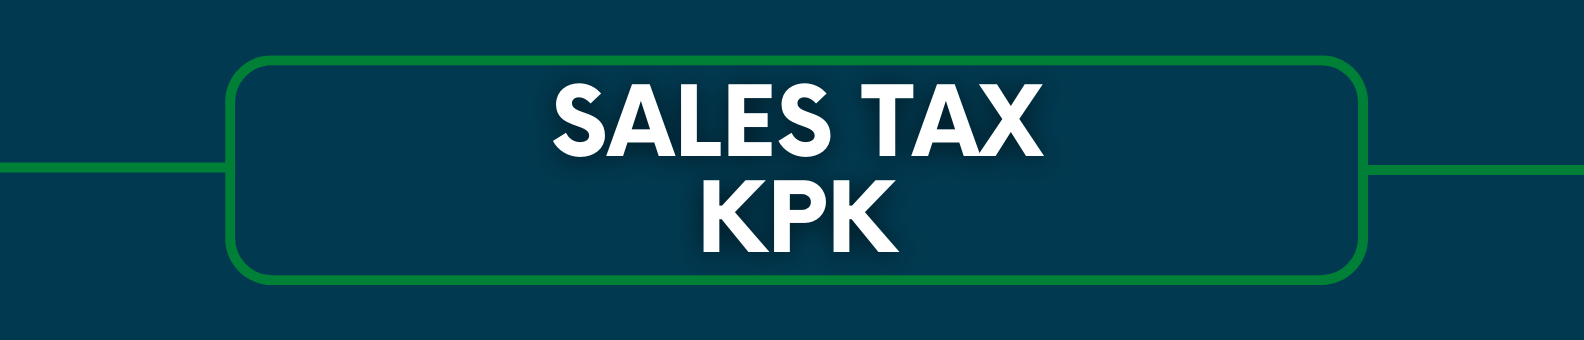 KPK Sales Tax